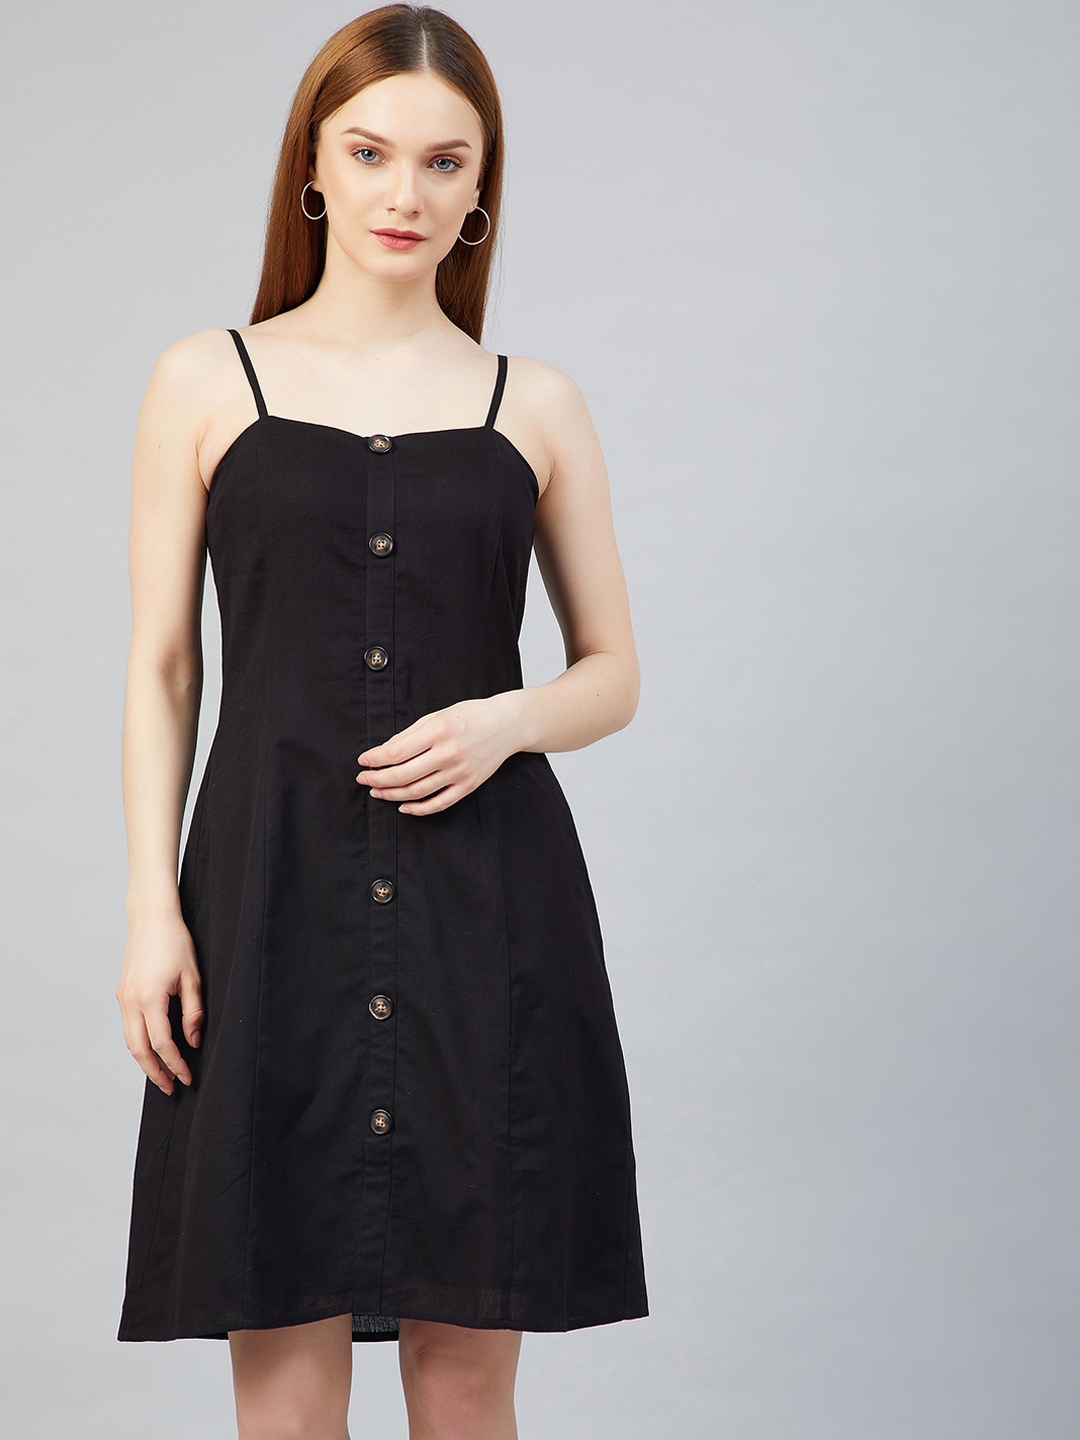 Buy Marie Claire Black A Line Cotton Dress - Dresses for Women 14786652 ...